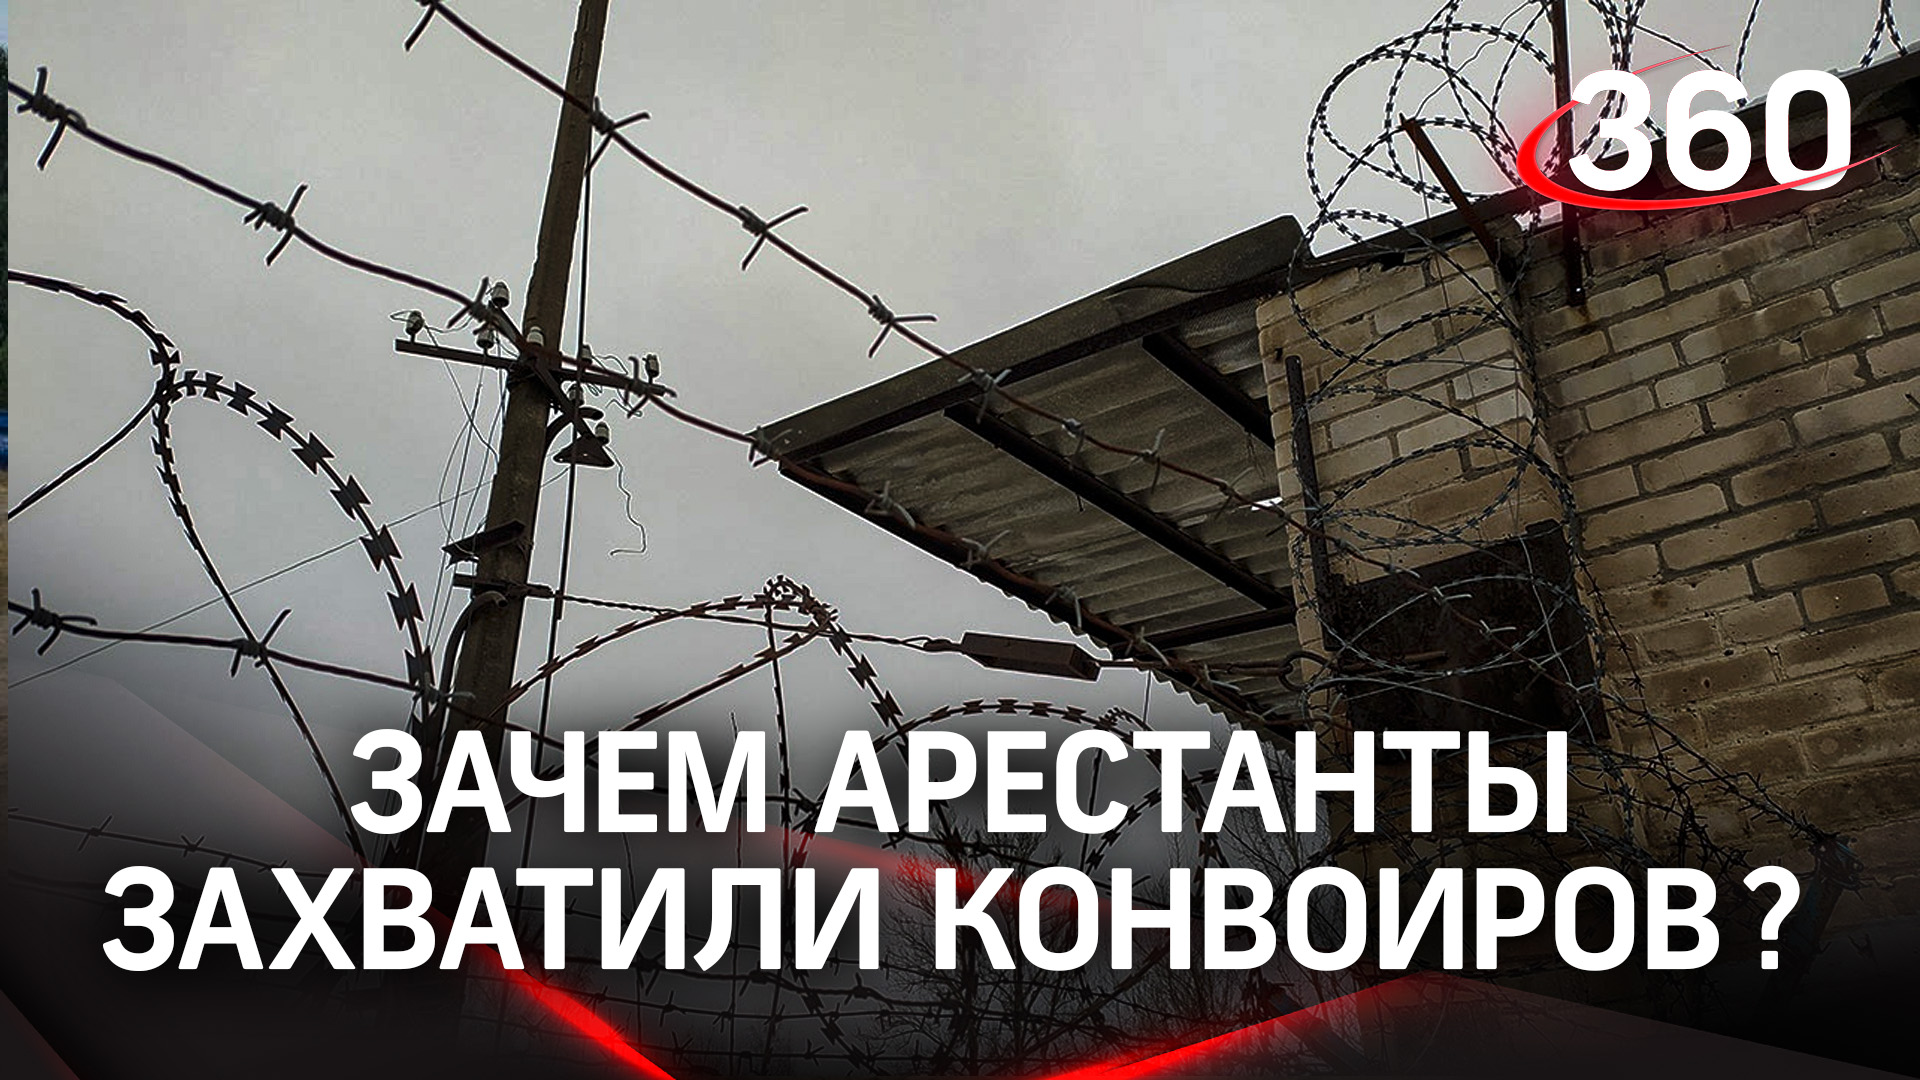 Узники заключённых: арестанты захватили сотрудников СИЗО в Кемерово. Чего они требовали?